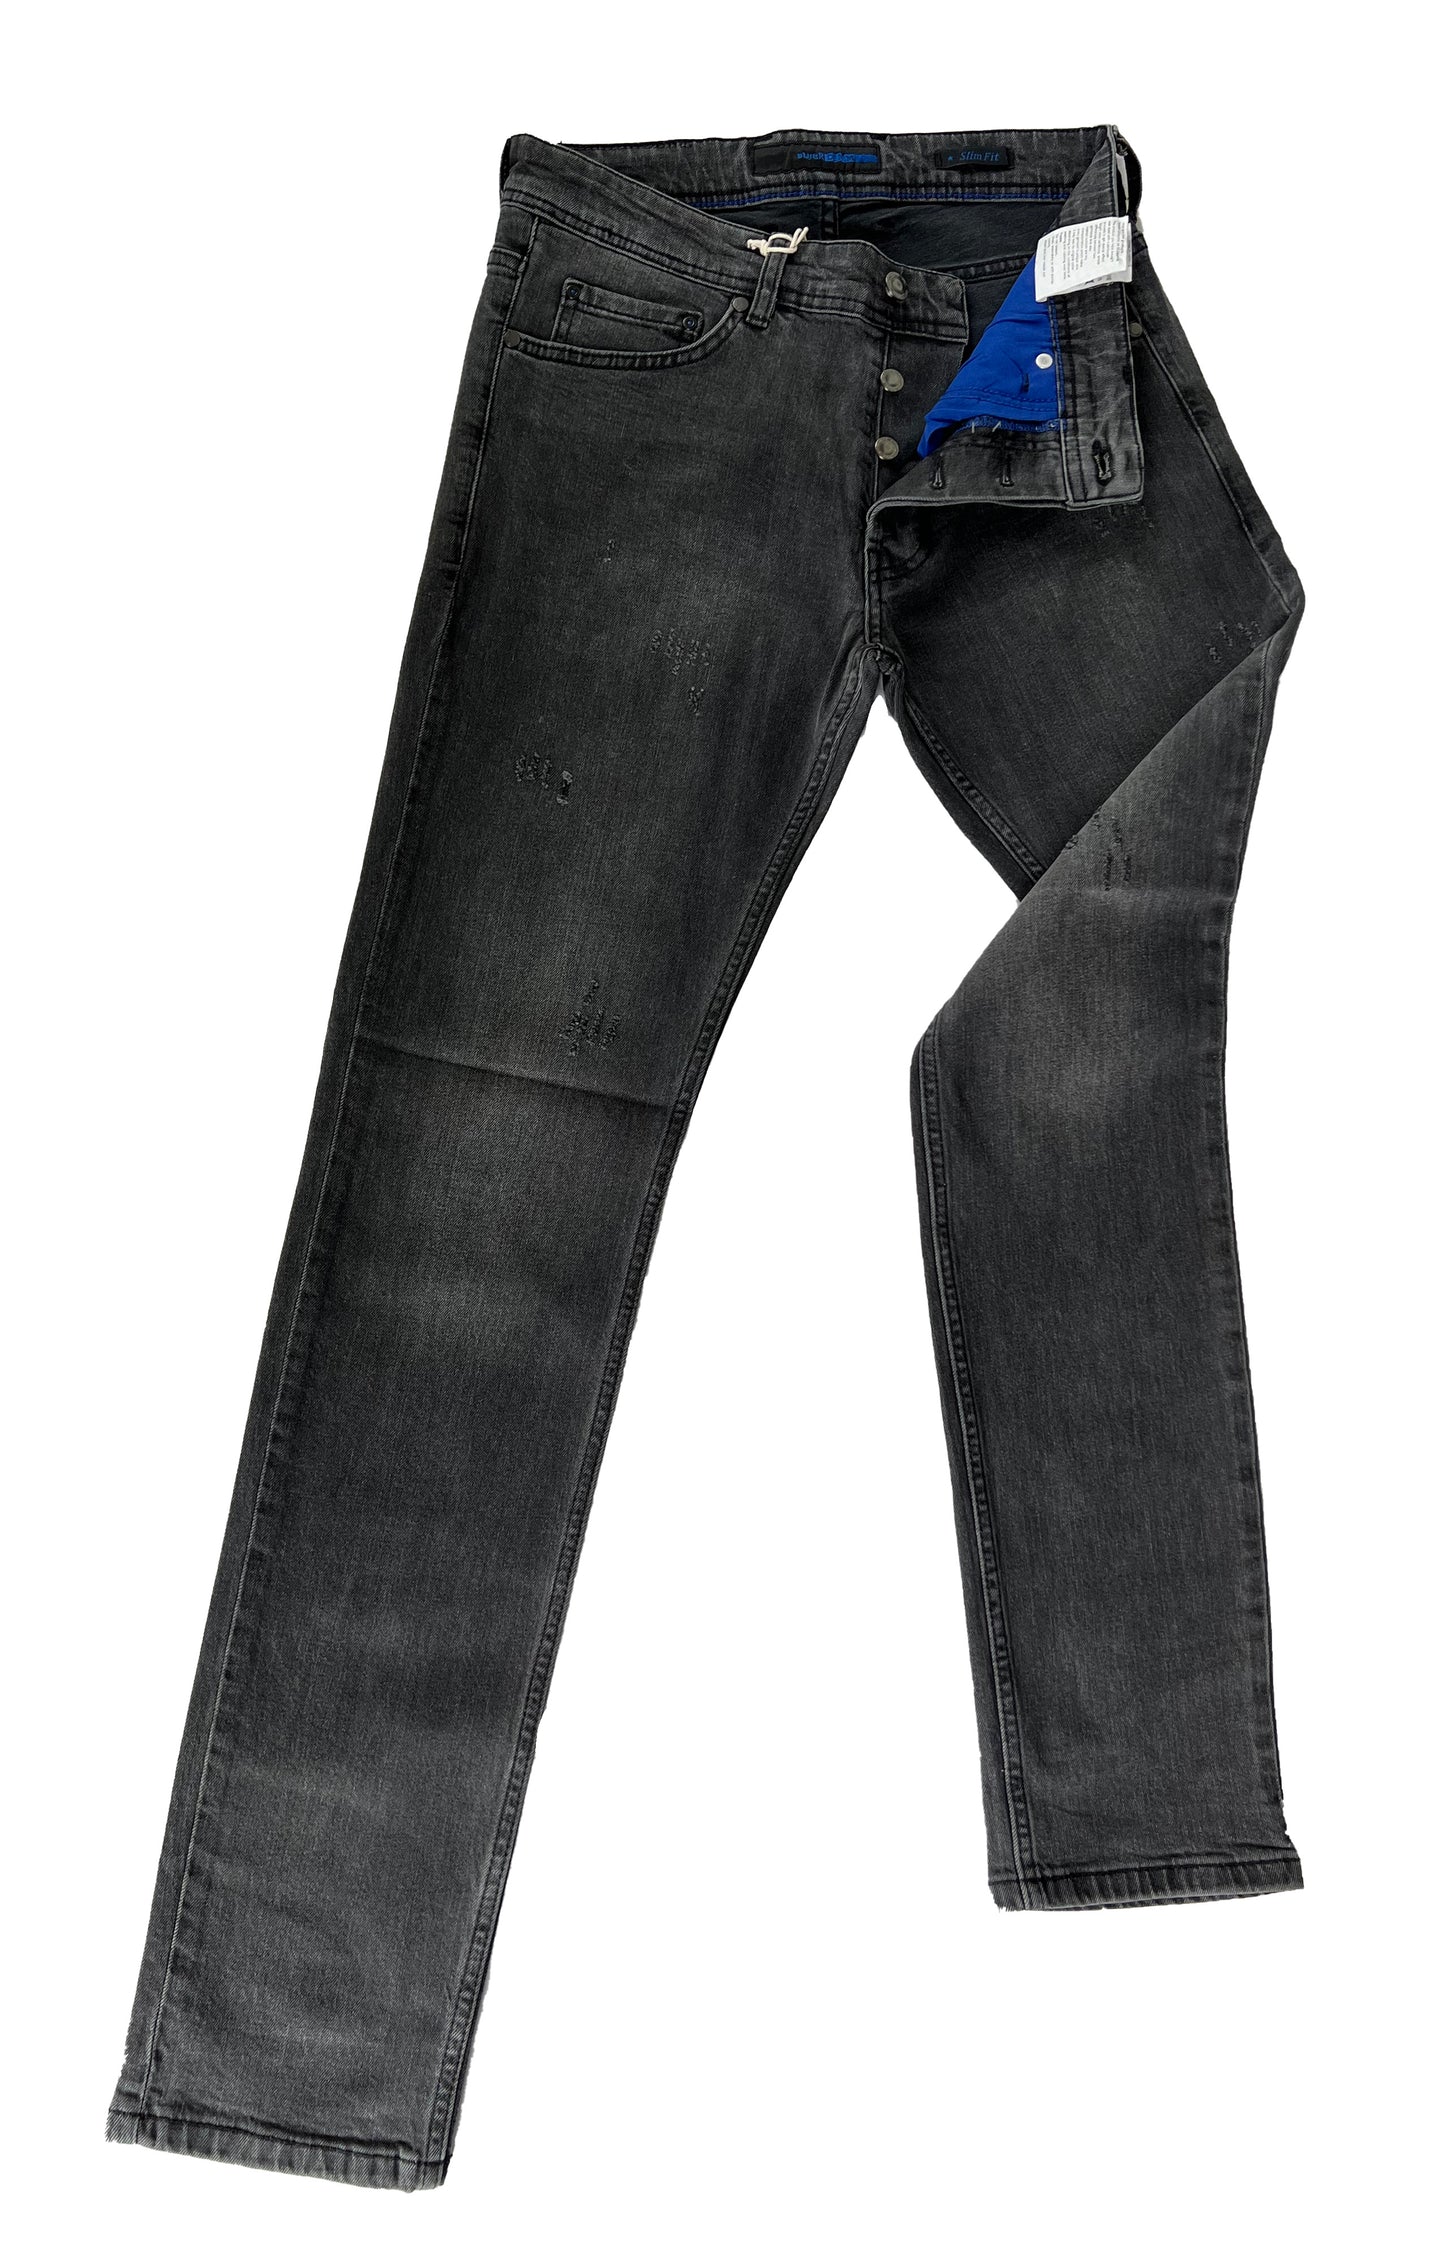 Men's Slim Fit Comfortable Jeans, Trousers- Holt